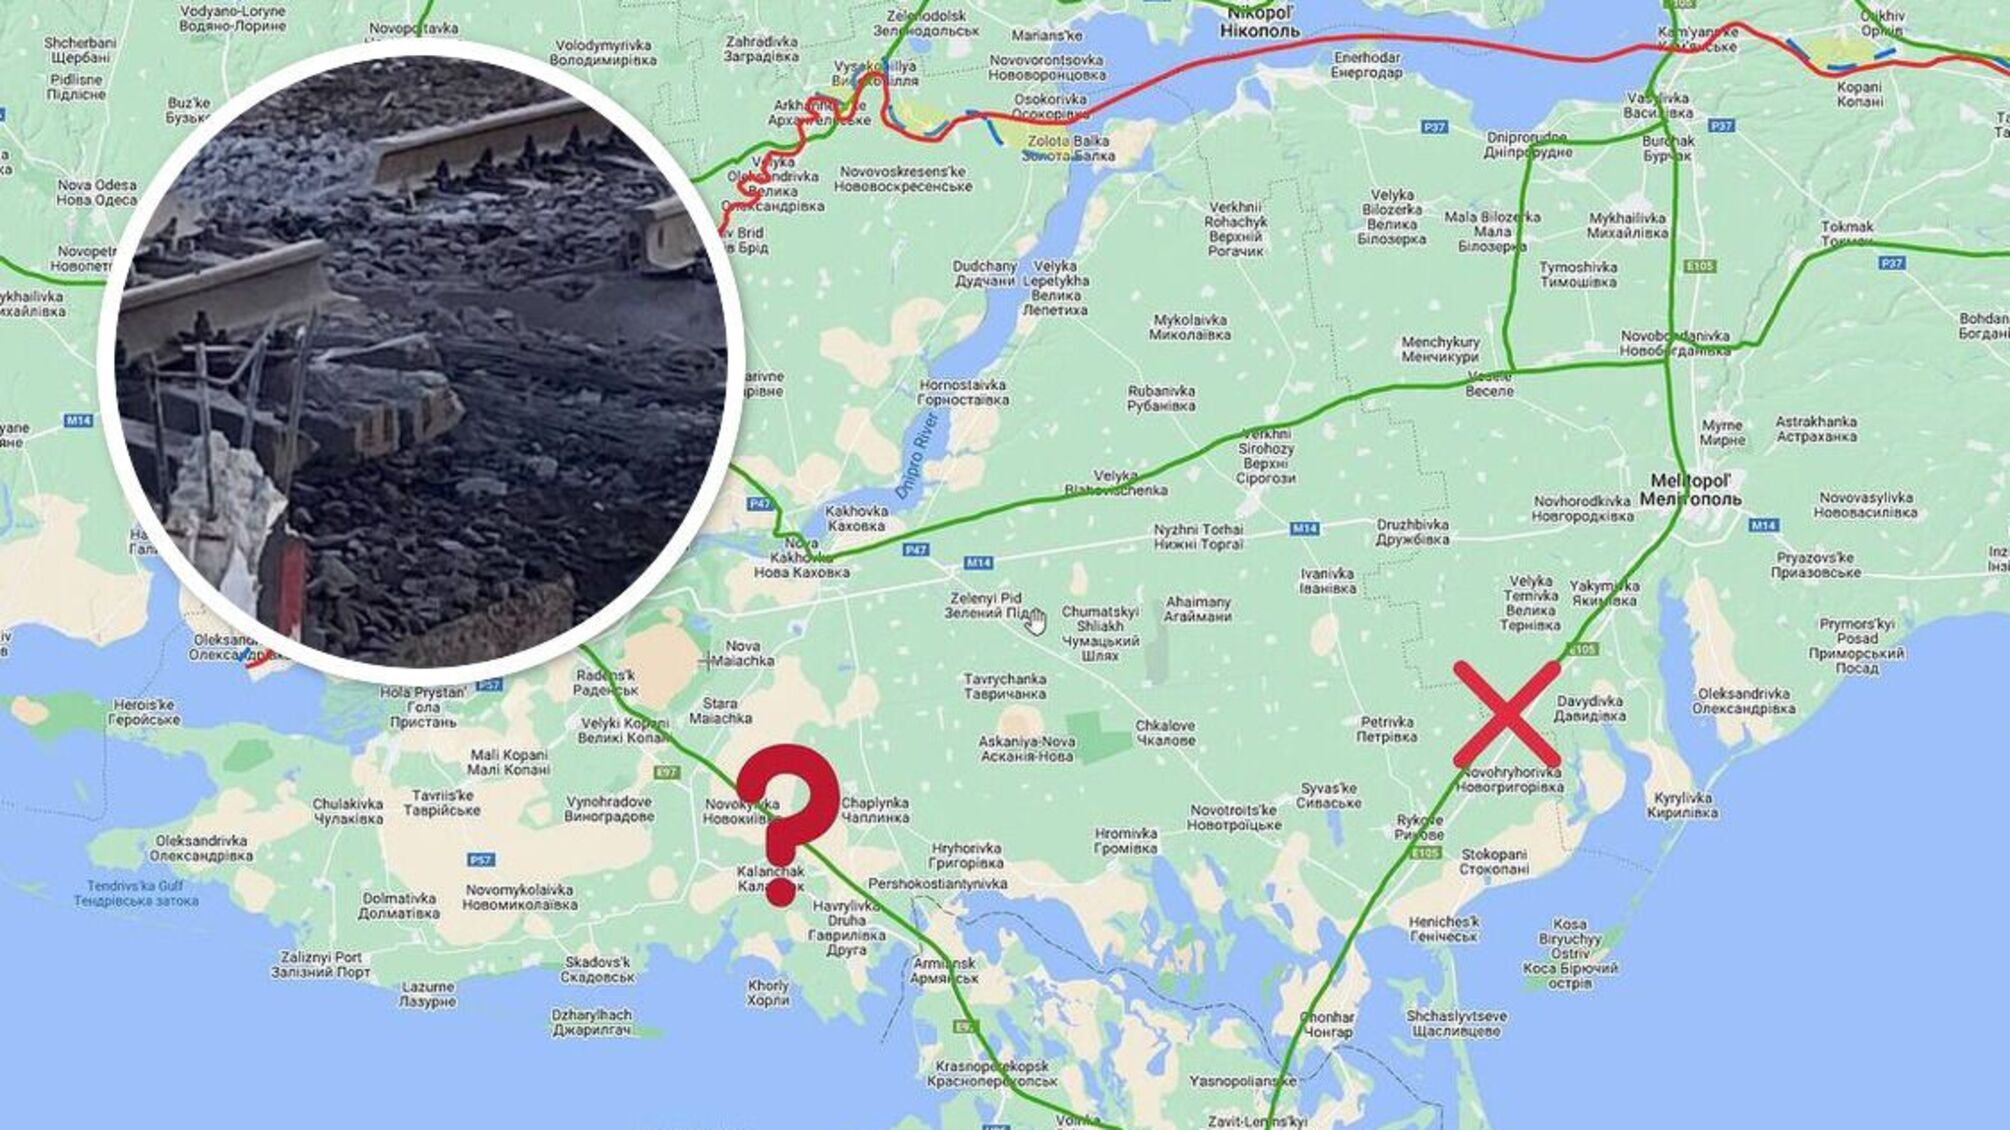 Обидва залізничні шляхи з Криму – зруйновано: як це впливає на логістику окупантів